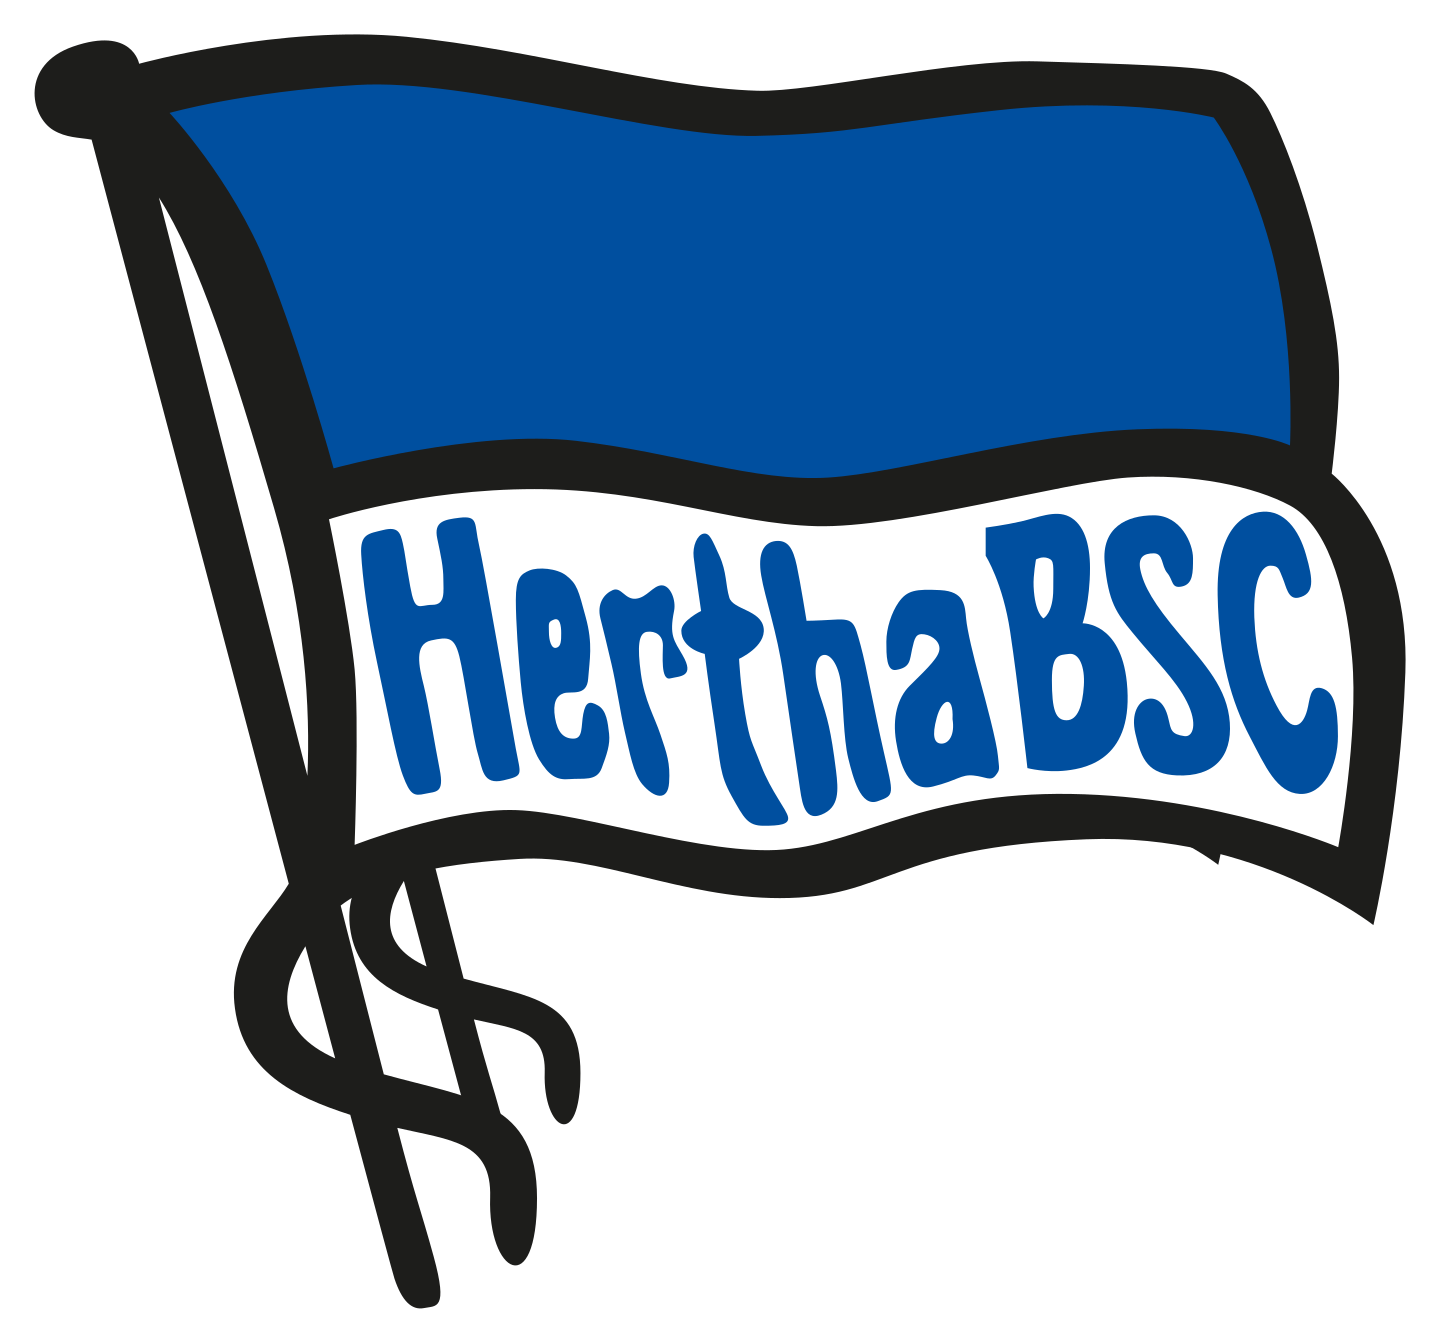 hertha bsc logo 2 - Hertha BSC Logo